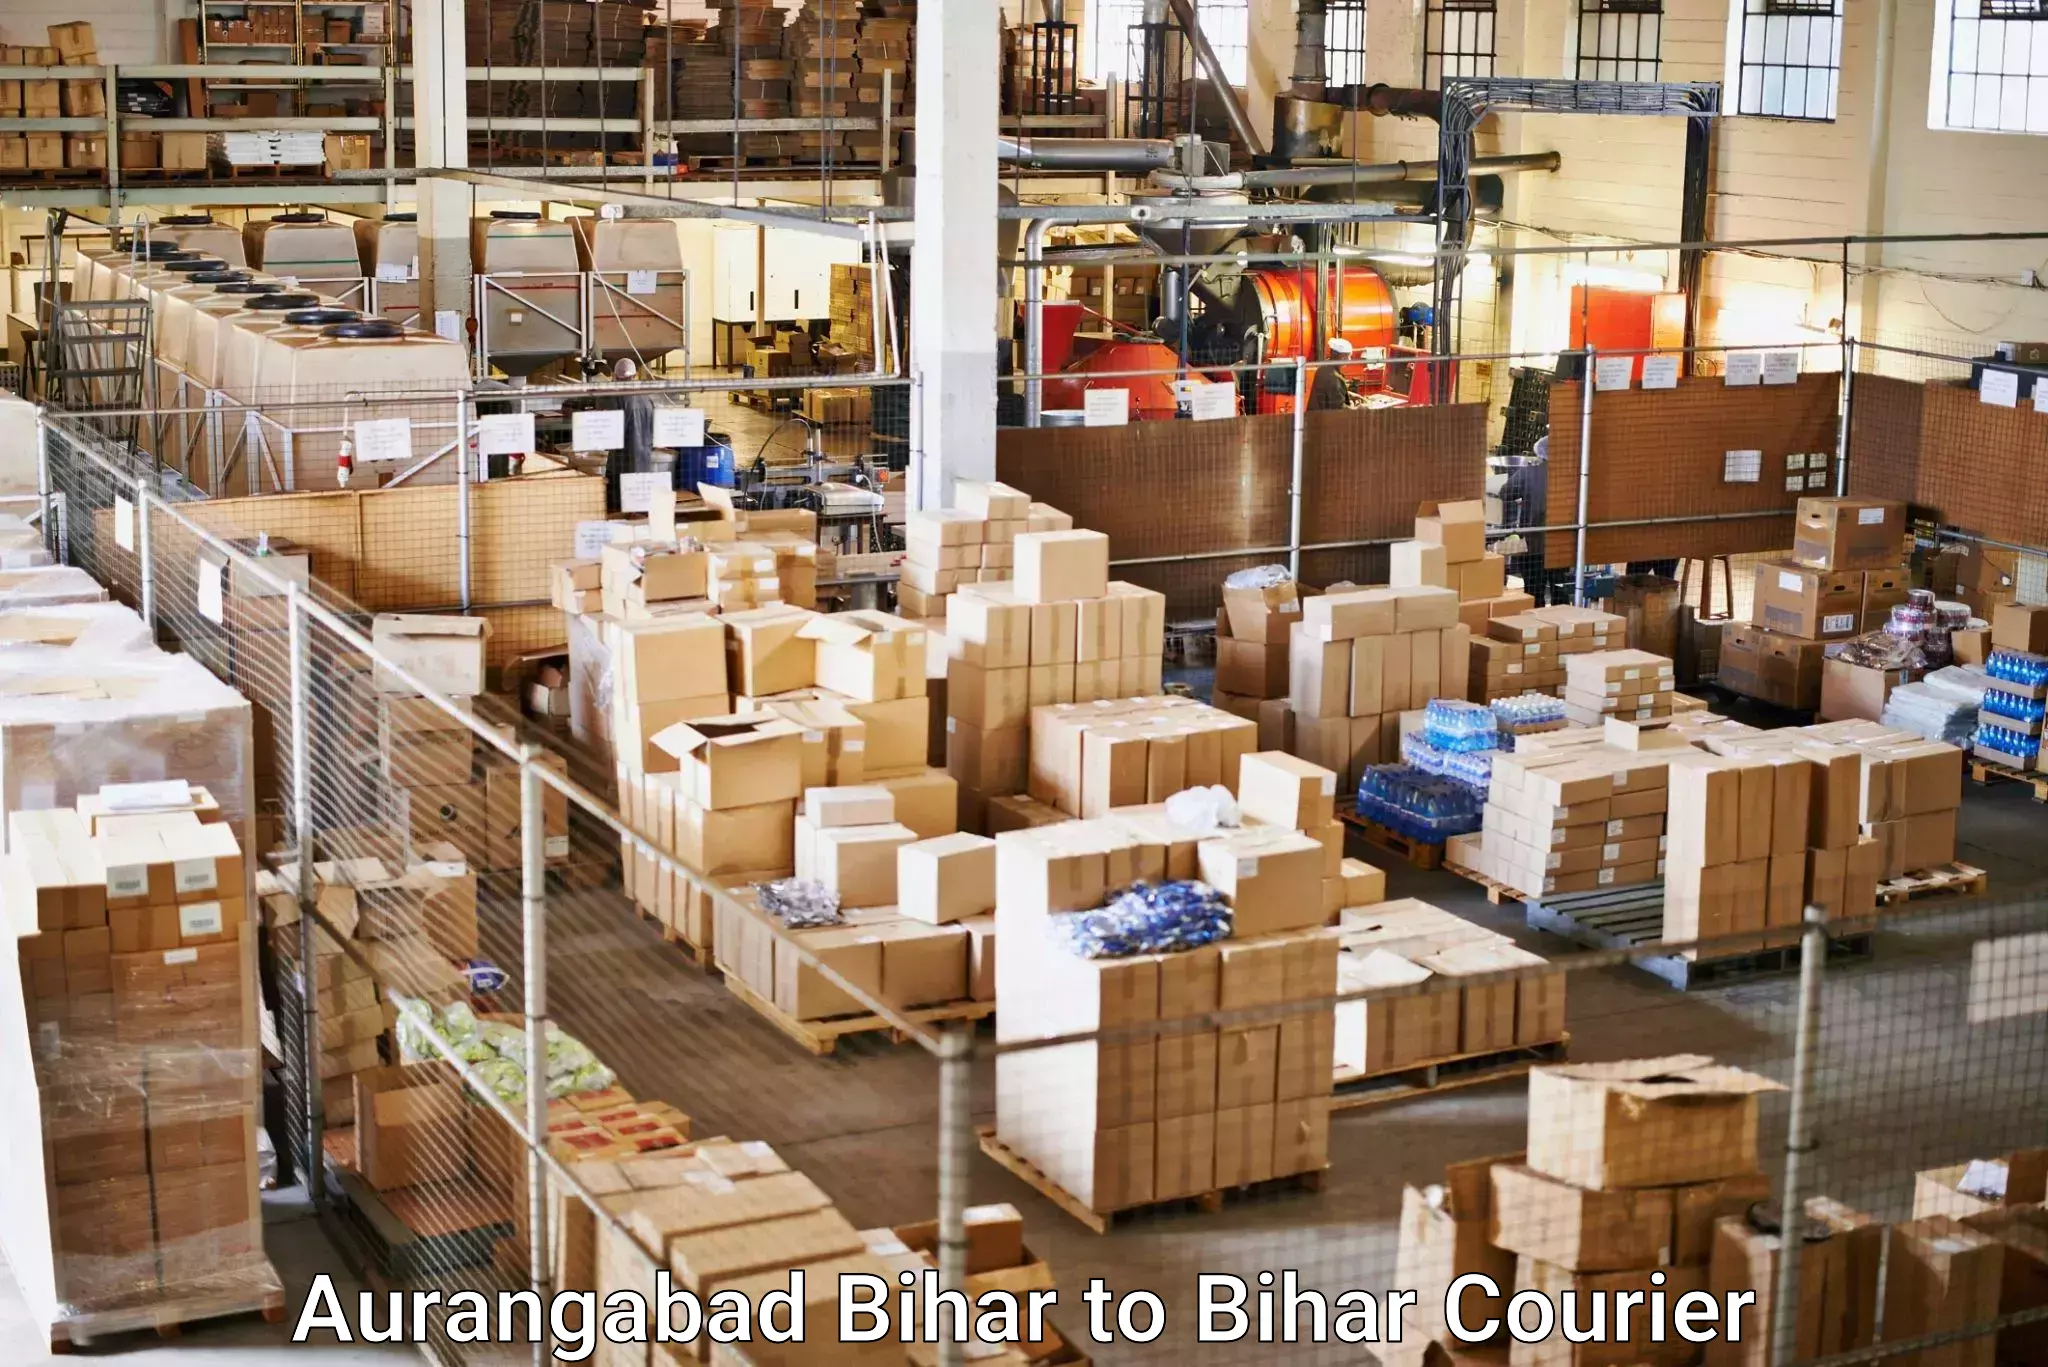 Premium courier solutions Aurangabad Bihar to Jehanabad